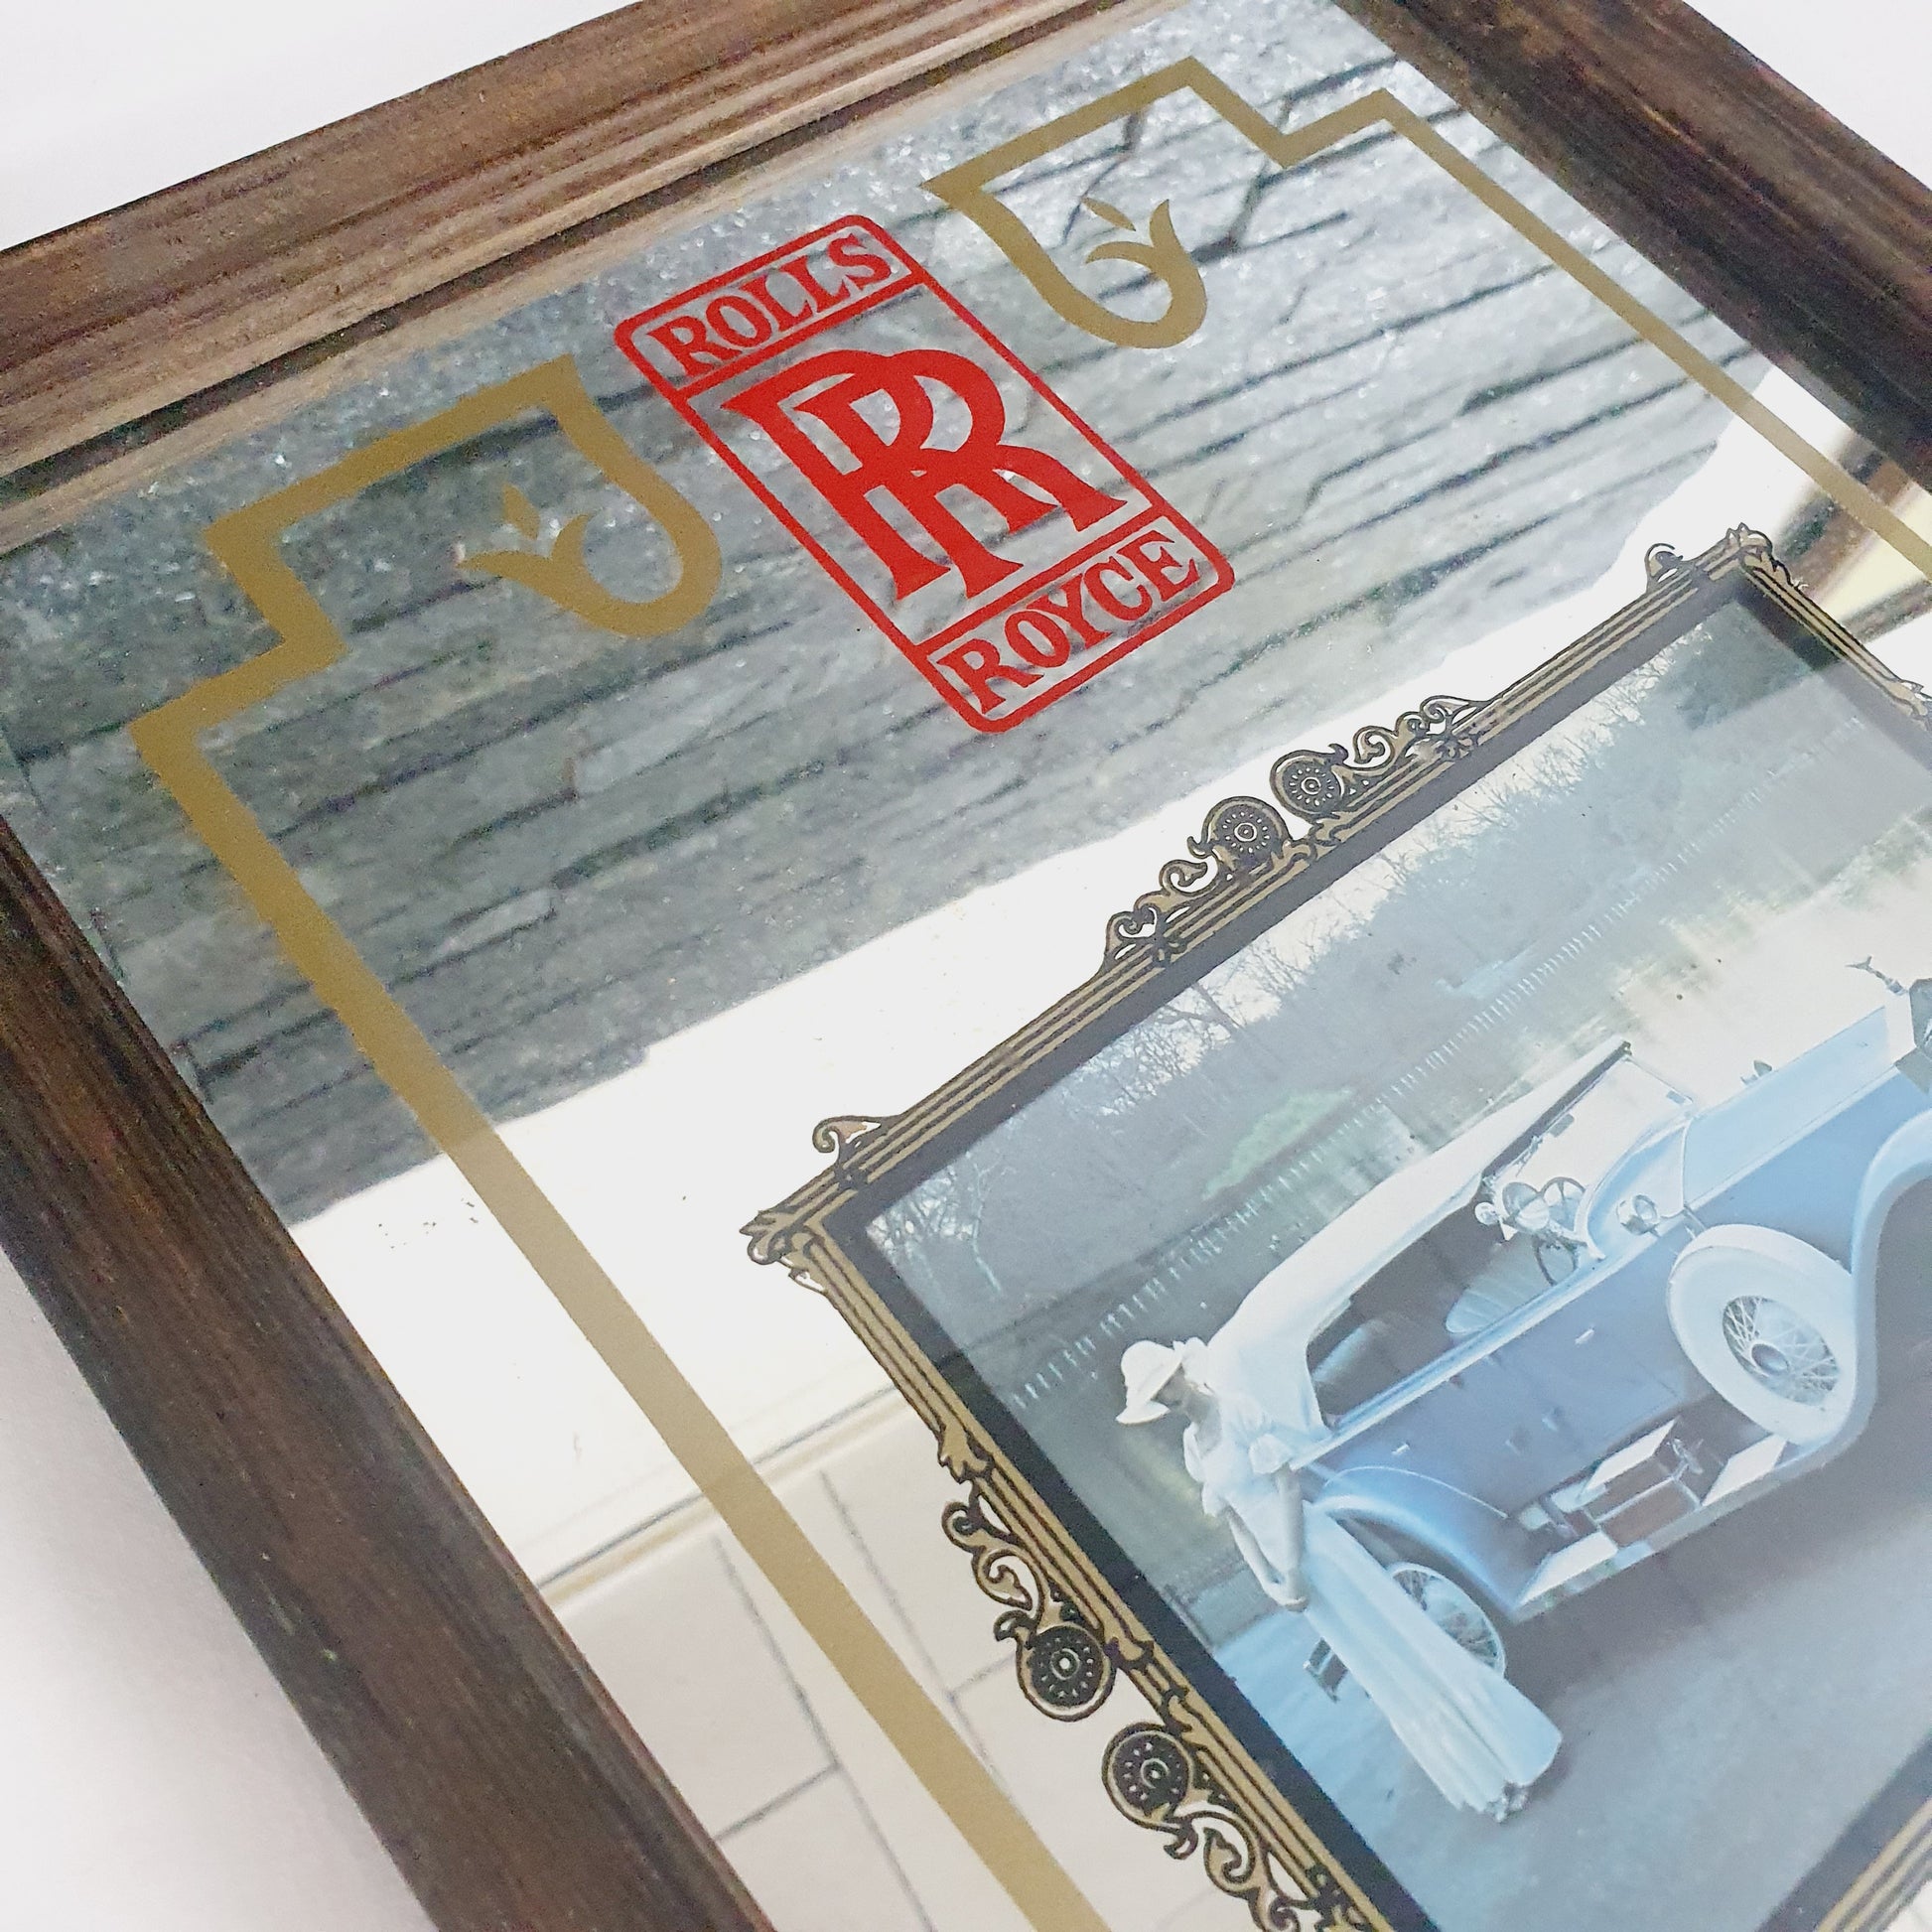 Miroir illustration rolls royce ancienne voiture